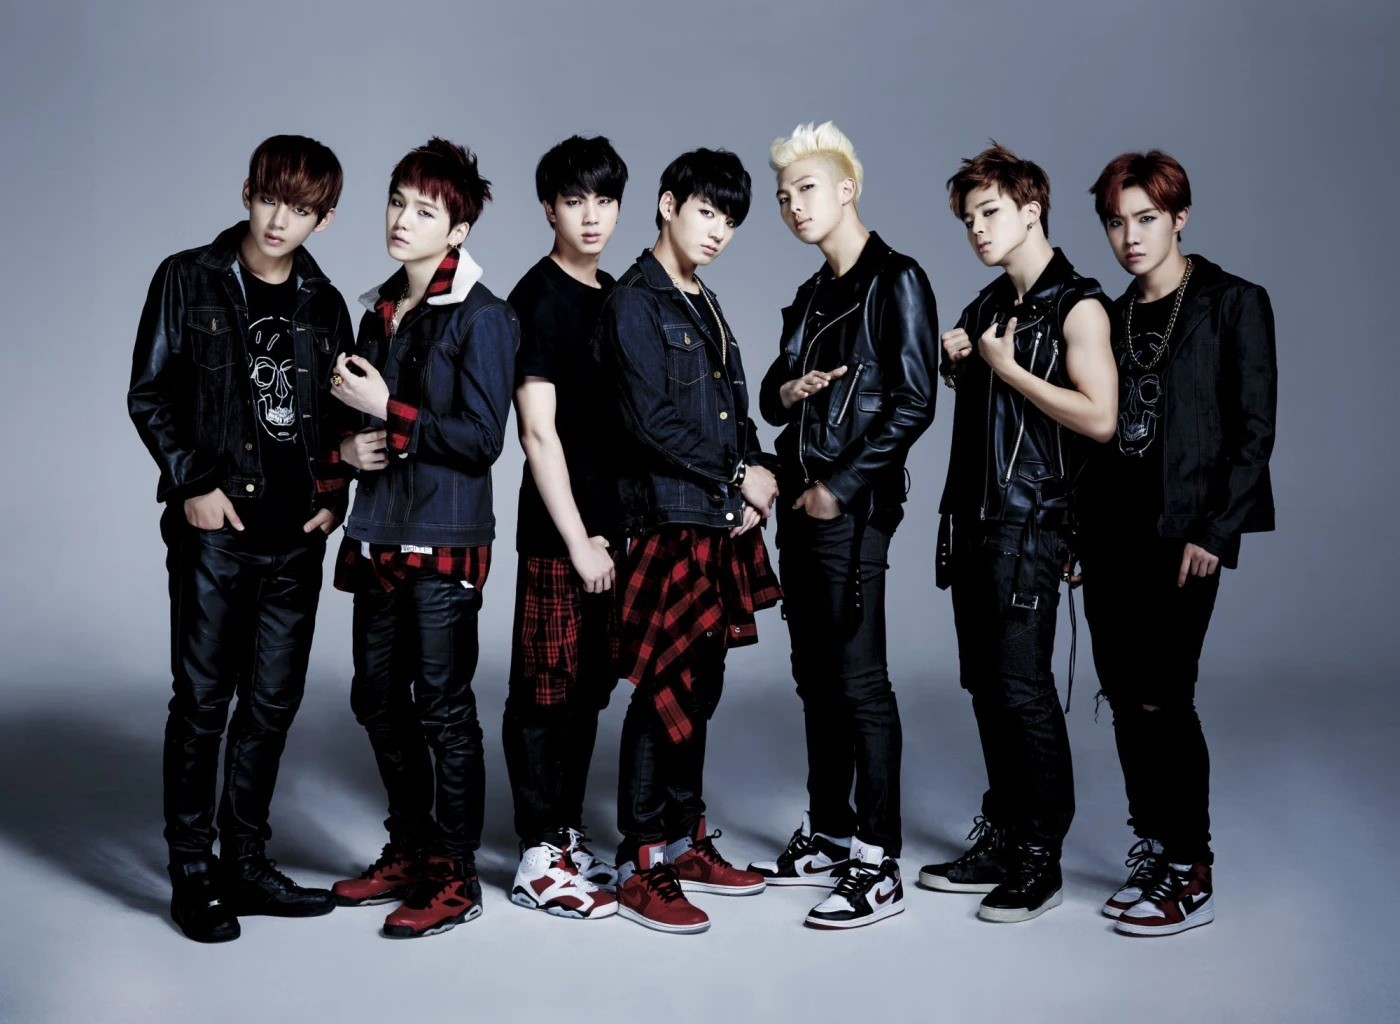 4.	Hình ảnh quảng bá cho màn comeback với ca khúc chủ đề “Danger” của nhóm nhạc BTS.